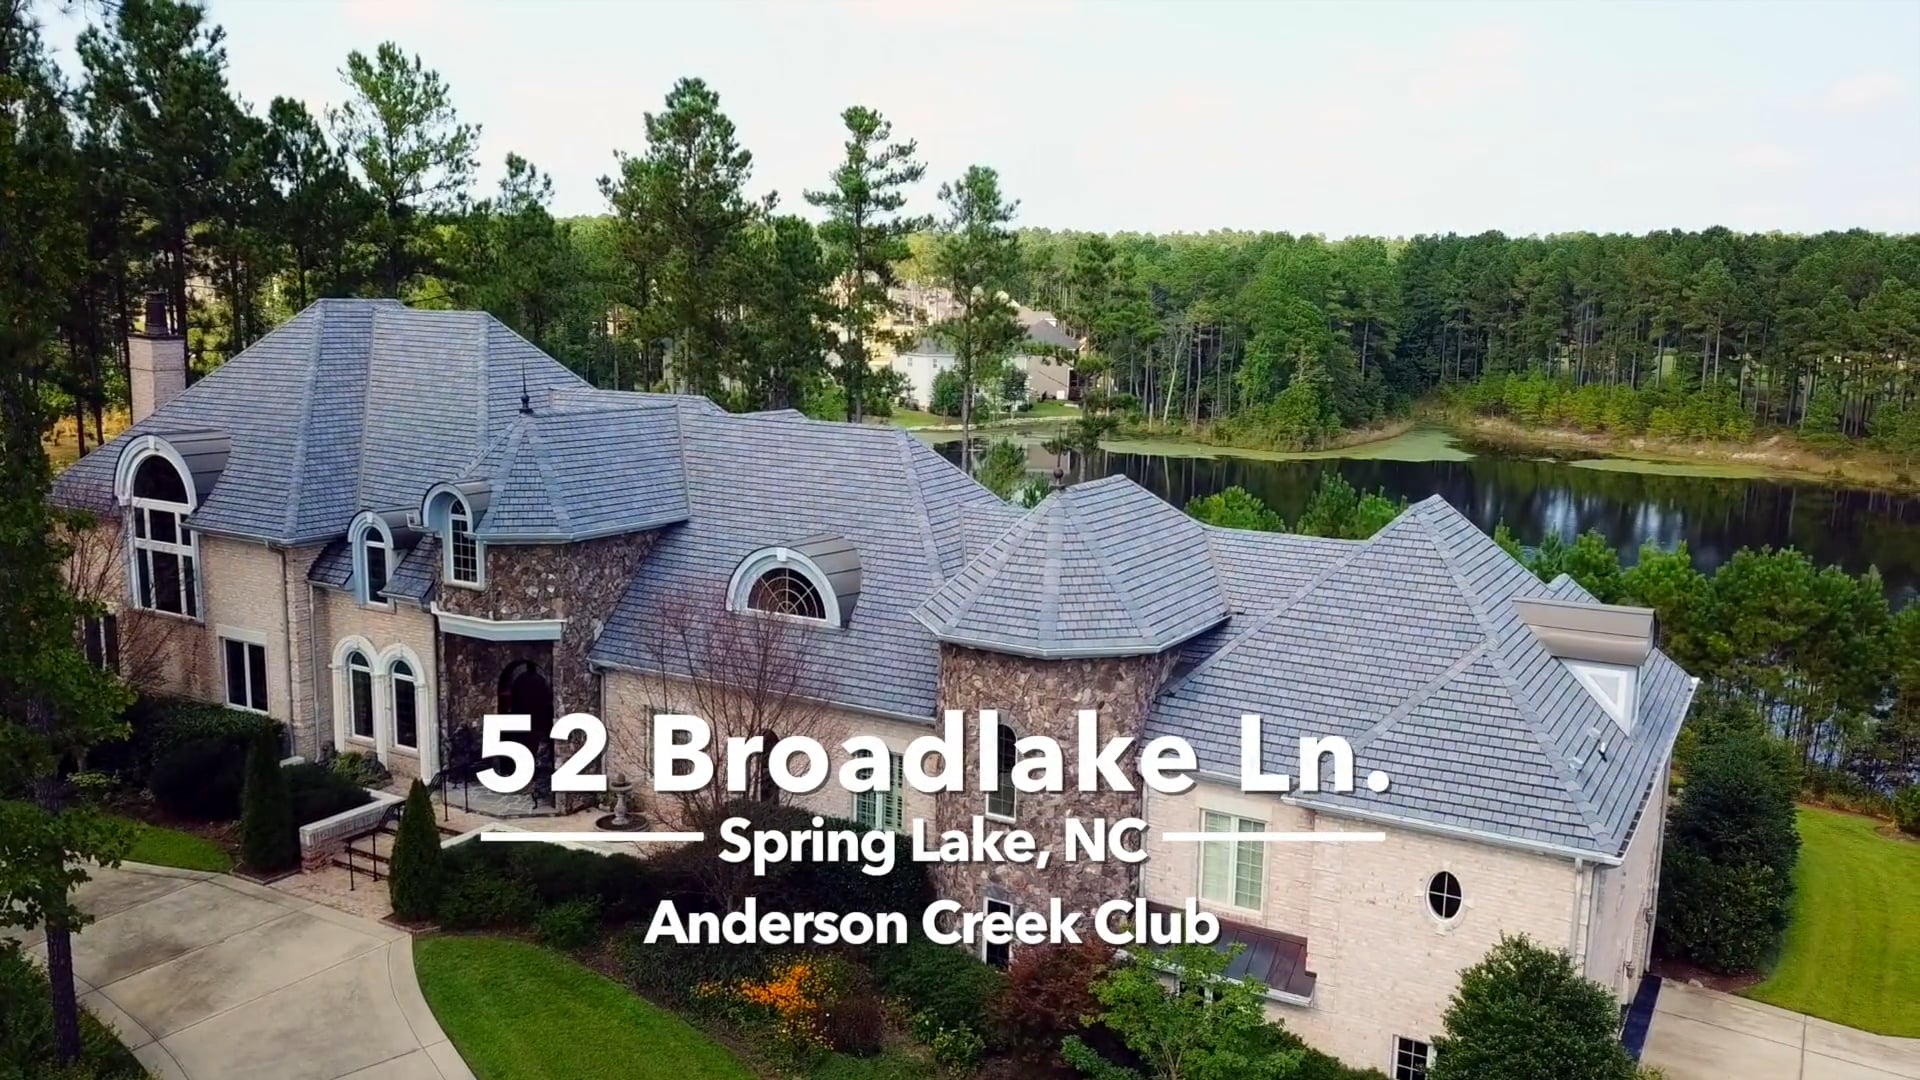 52 Broadlake Ln - Spring Lake, NC - Anderson Creek Club